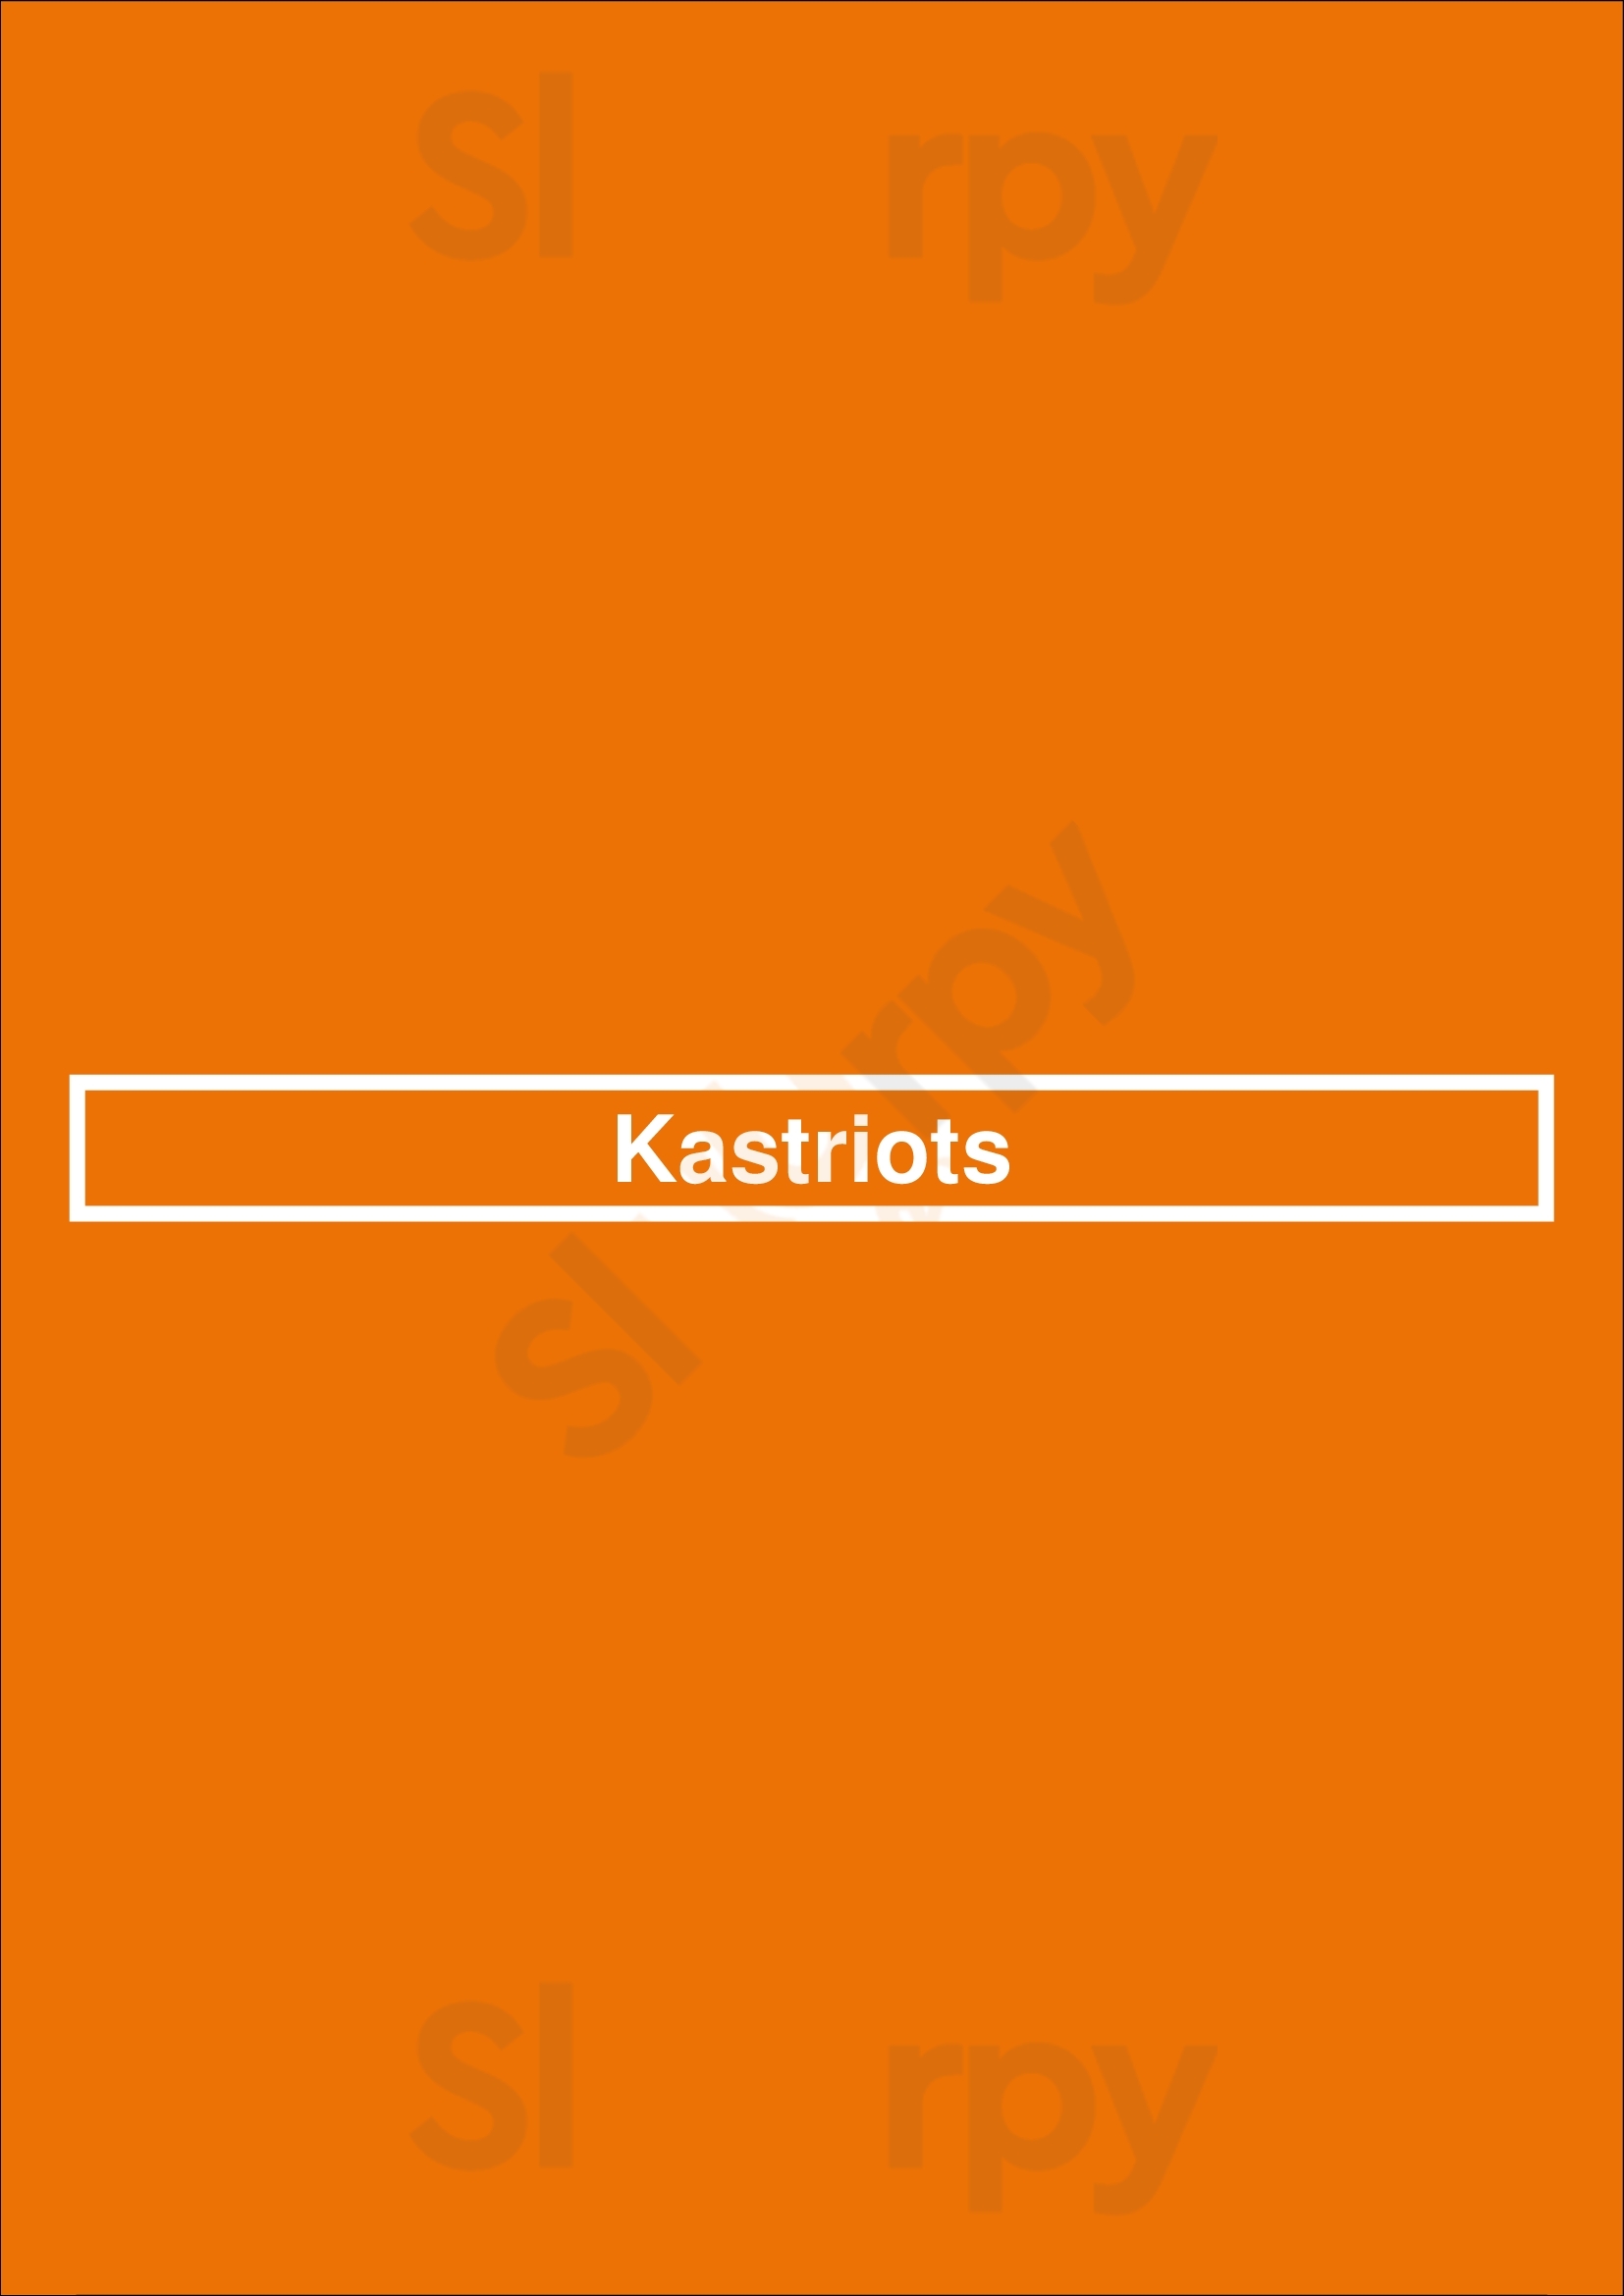 Kastriot's Mediterranean Bar & Grill Glasgow Menu - 1